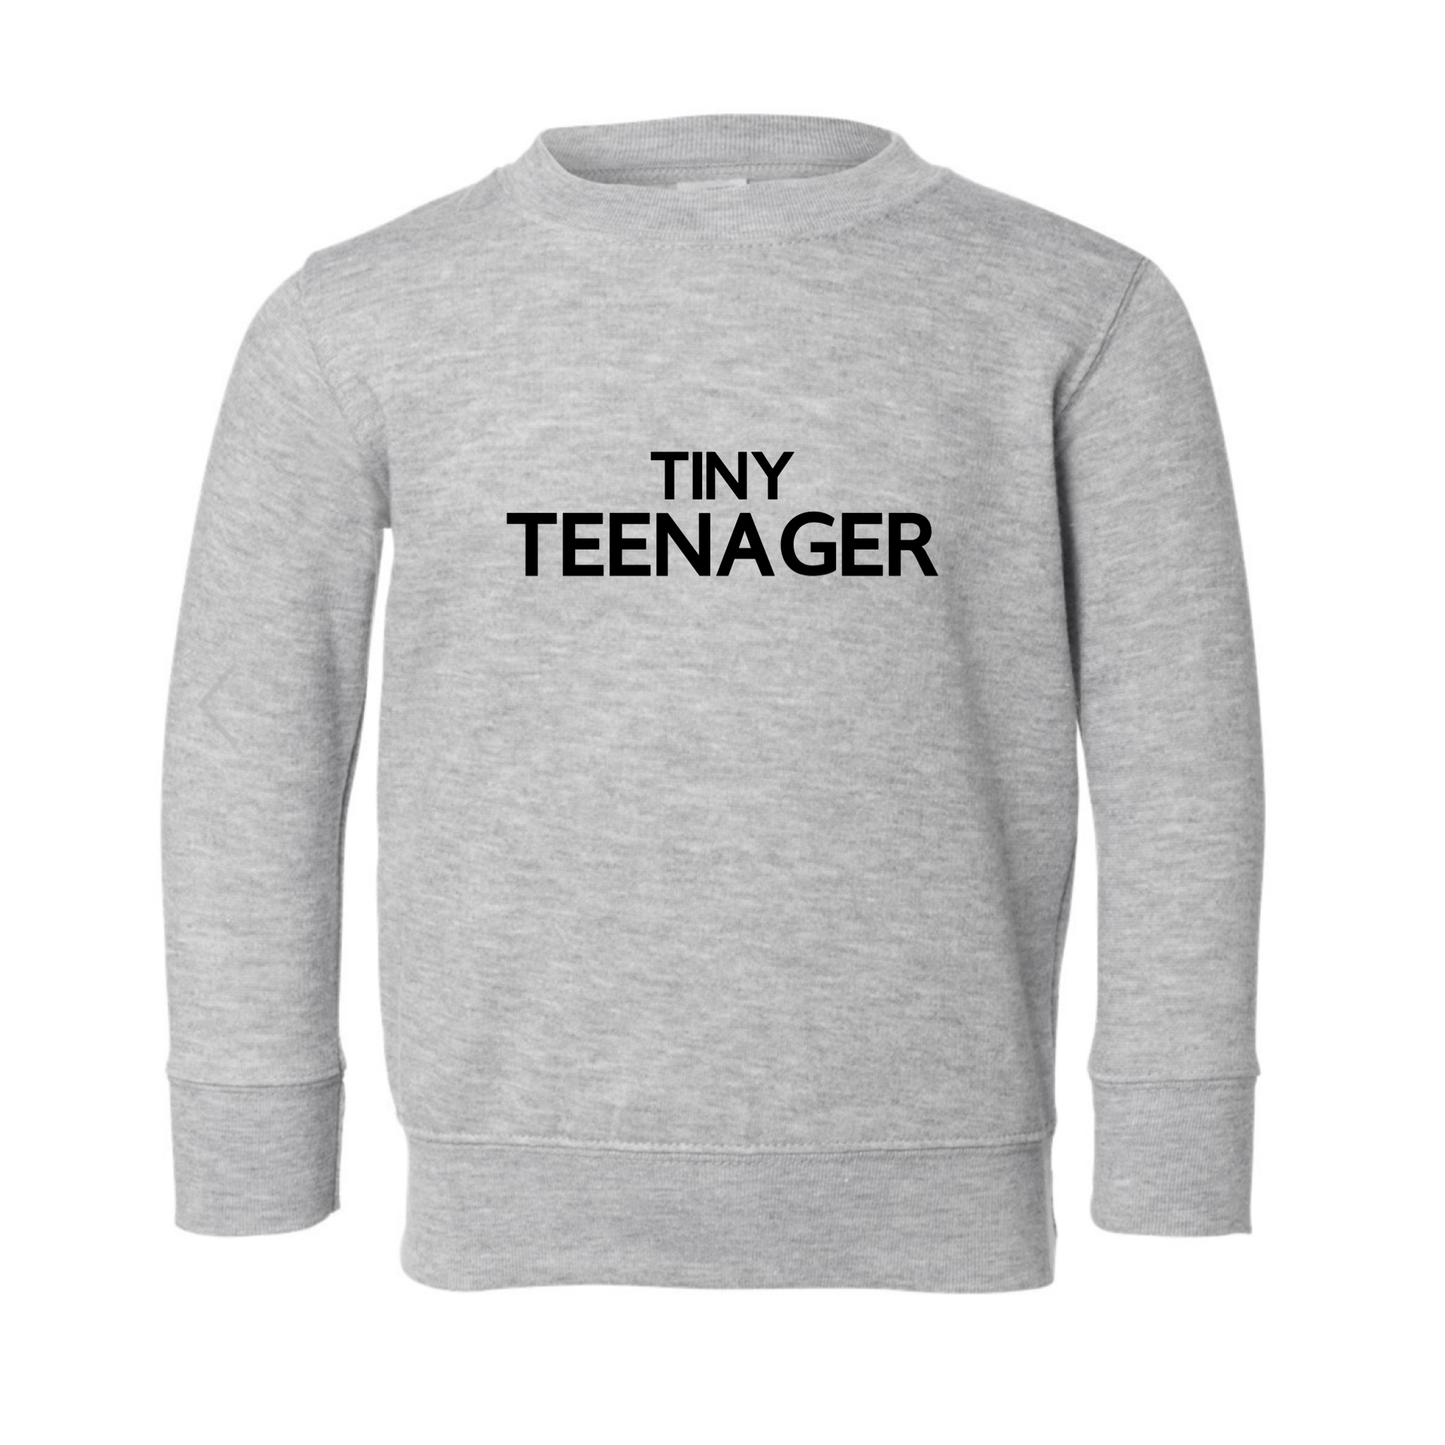 Tiny Teenager Children's Sweatshirt